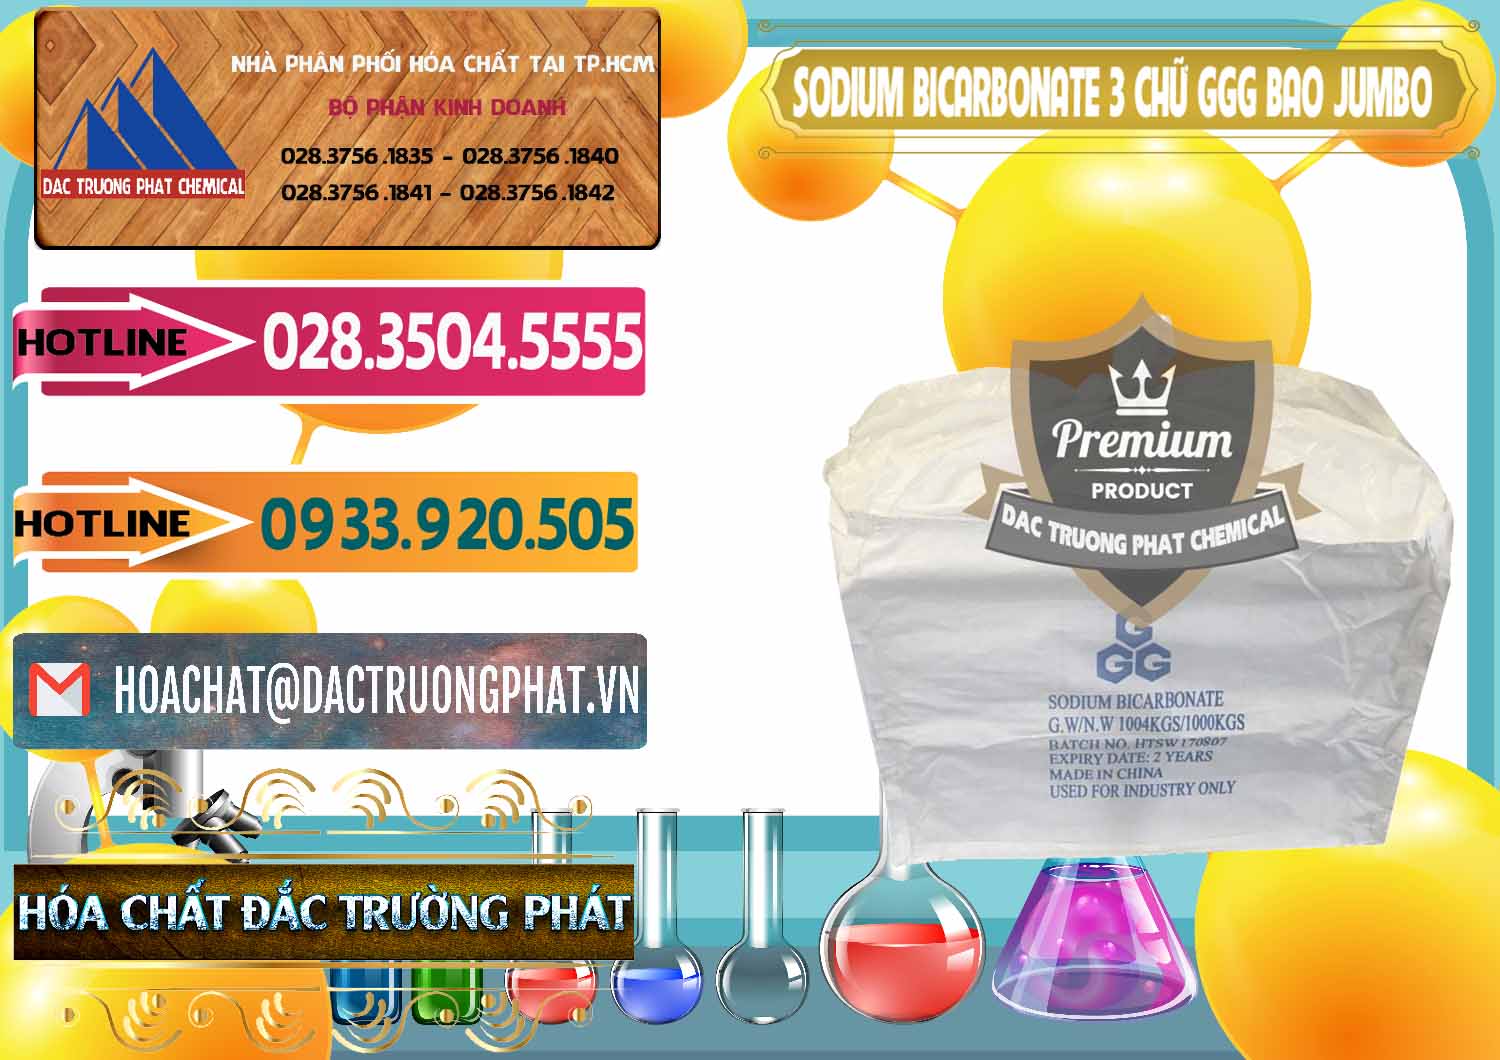 Chuyên phân phối & bán Sodium Bicarbonate – Bicar NaHCO3 Food Grade 3 Chữ GGG Bao Jumbo ( Bành ) Trung Quốc China - 0260 - Cty cung cấp _ nhập khẩu hóa chất tại TP.HCM - dactruongphat.vn